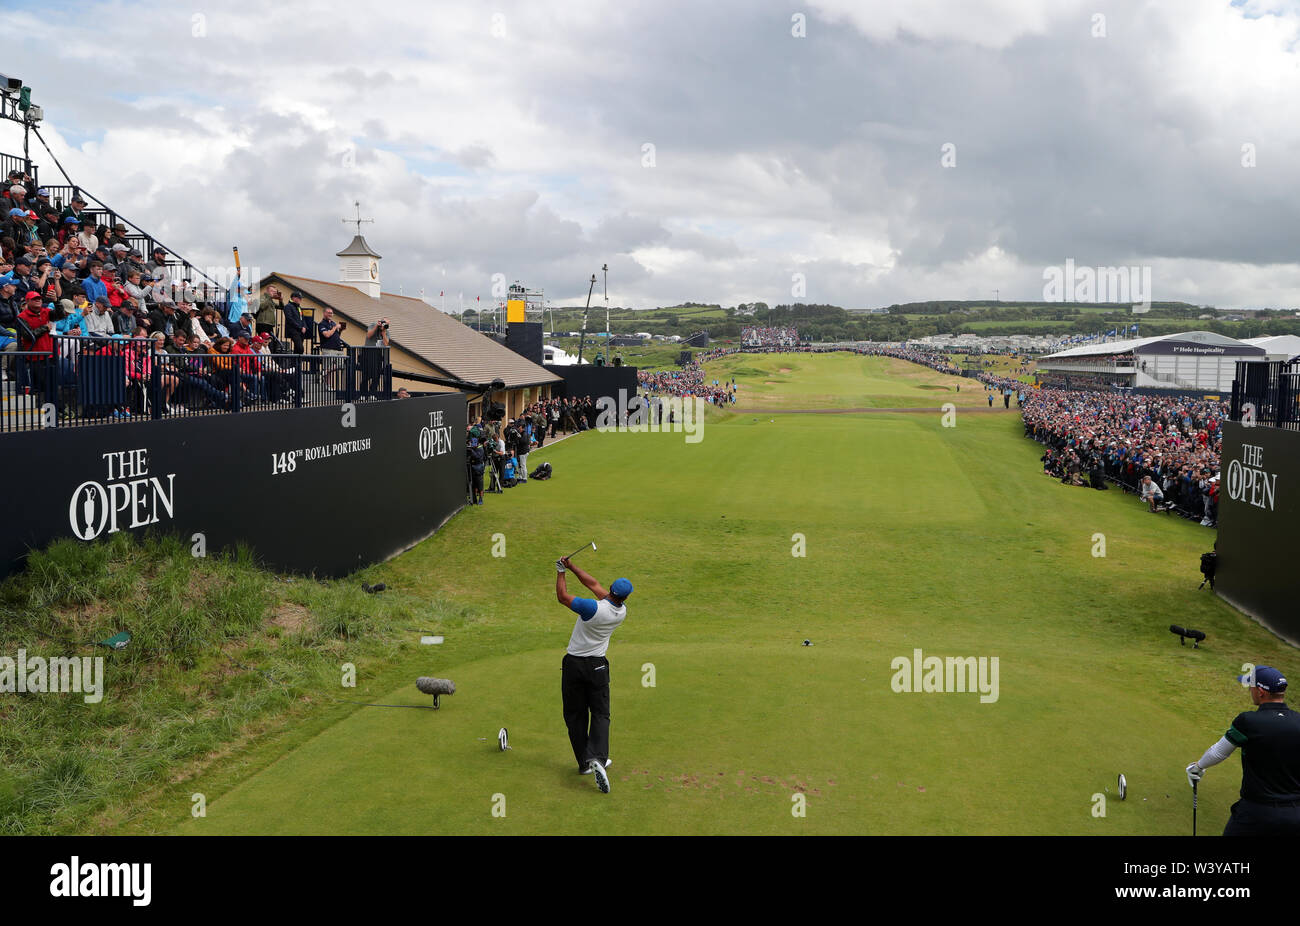 USA's Tiger Woods tees au large de la 1ère lors de la première journée de l'Open Championship 2019 au Club de golf Royal Portrush. Banque D'Images